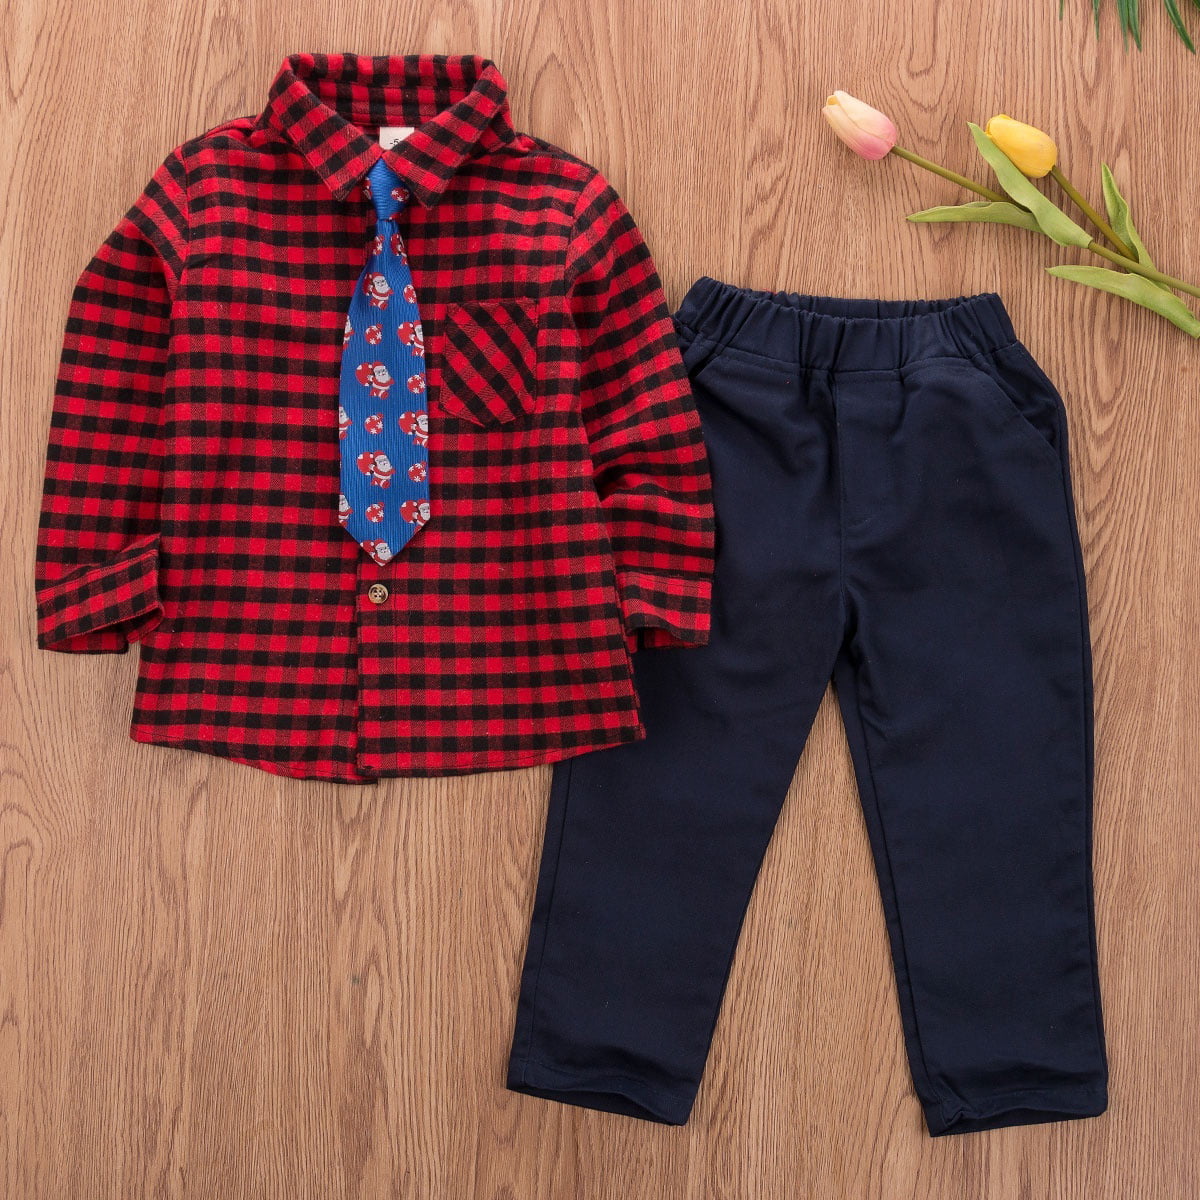 Newborn Toddler Baby Boy Summer Gentleman Clothes Set Pants+Shirt Tops Outfits